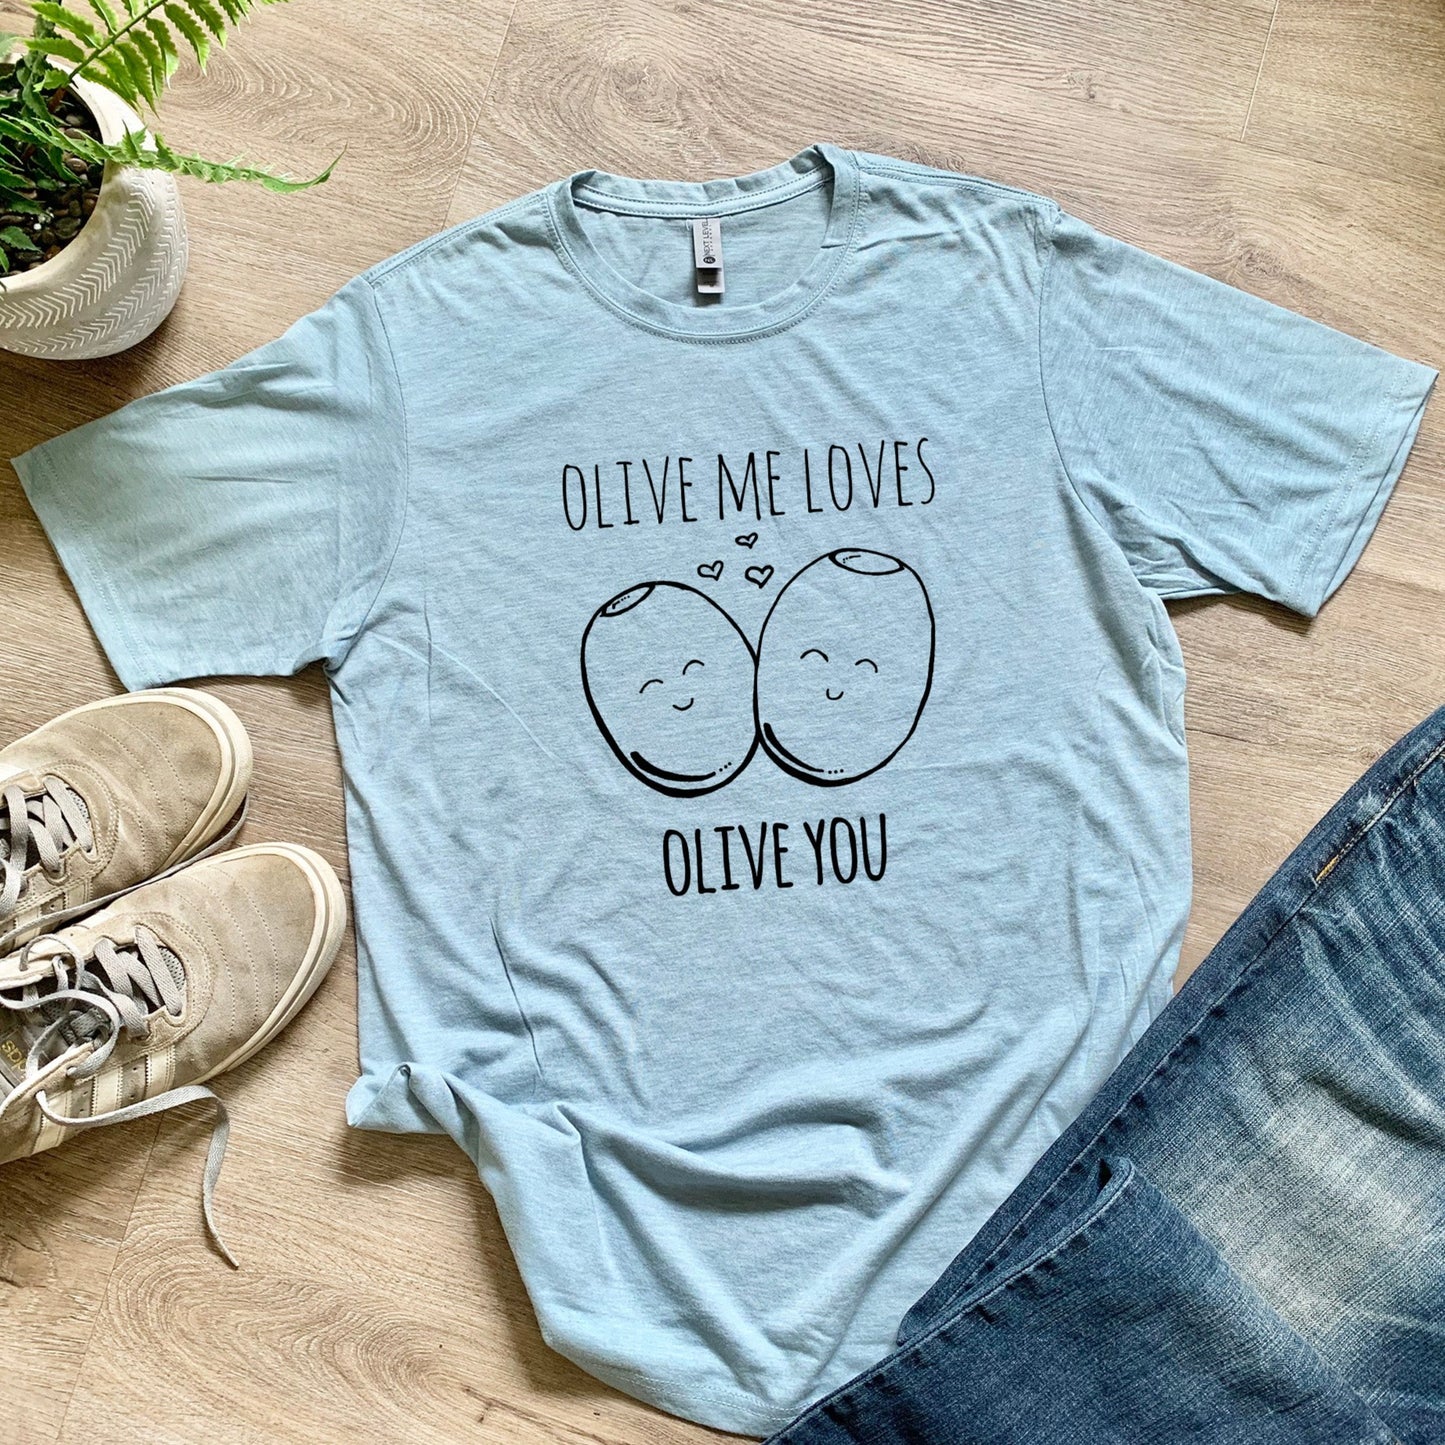 Olive Me Loves Olive You - Men's / Unisex Tee - Stonewash Blue or Sage